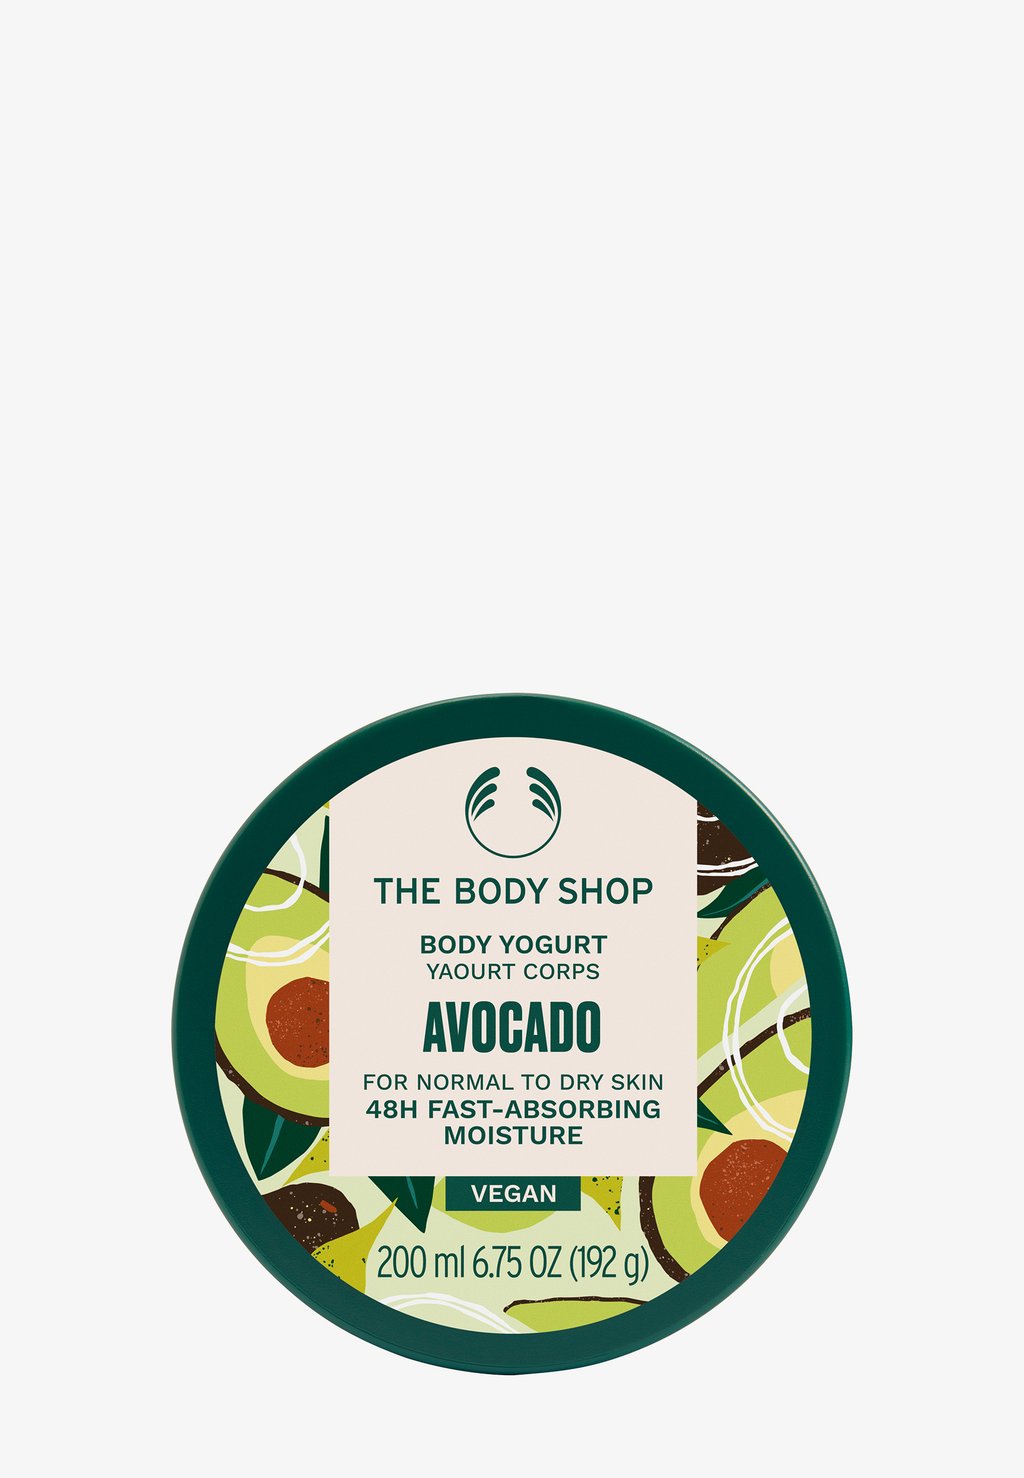 Гель для душа BODY YOGURT The Body Shop, цвет avocado